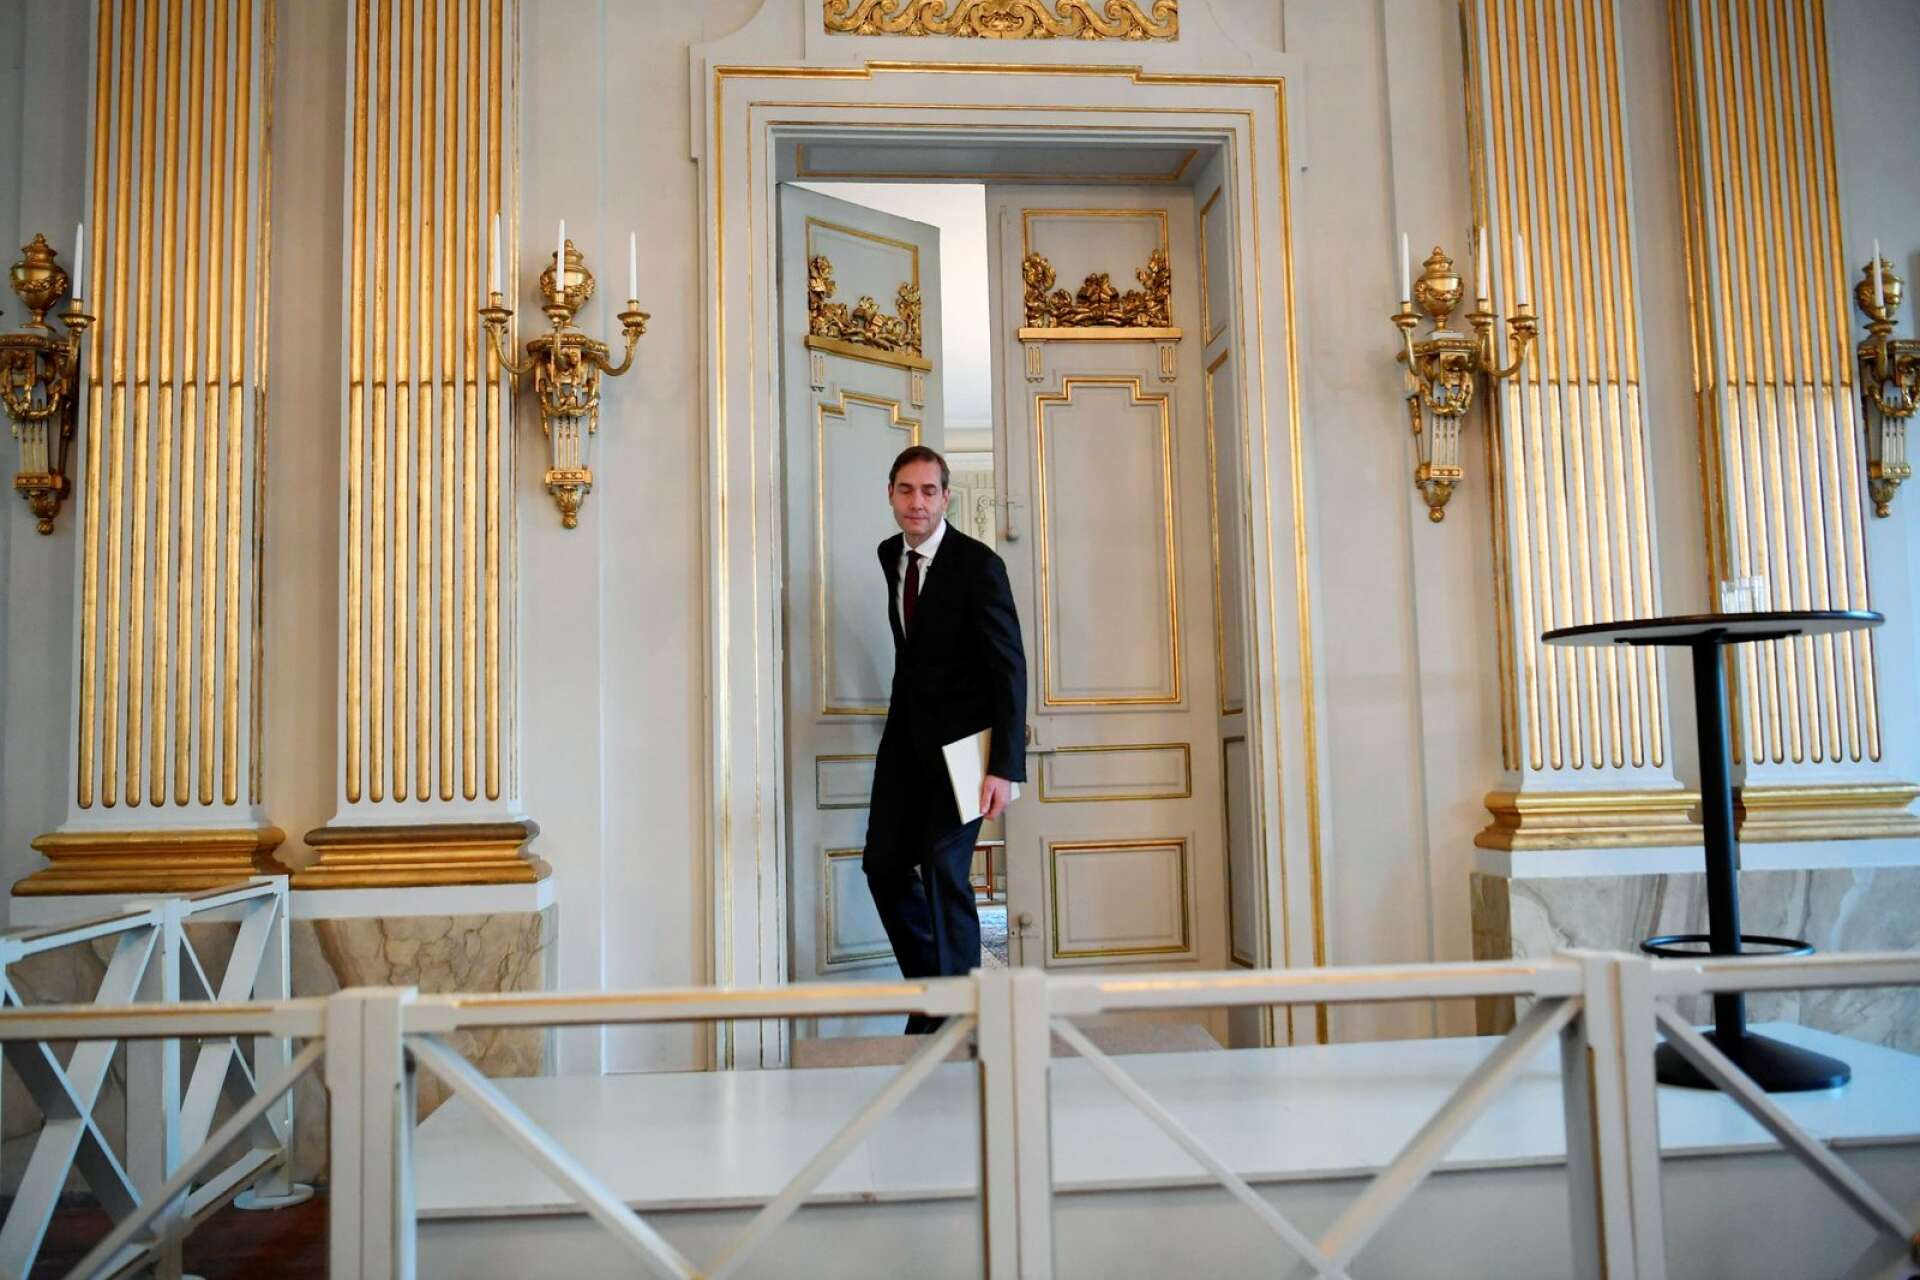 Vem får 2022 års Nobelpris i litteratur? Det visar sig när Mats Malm, ständig sekreterare vid Svenska Akademin, kliver ut genom Sveriges kanske mest kända dörr i oktober.